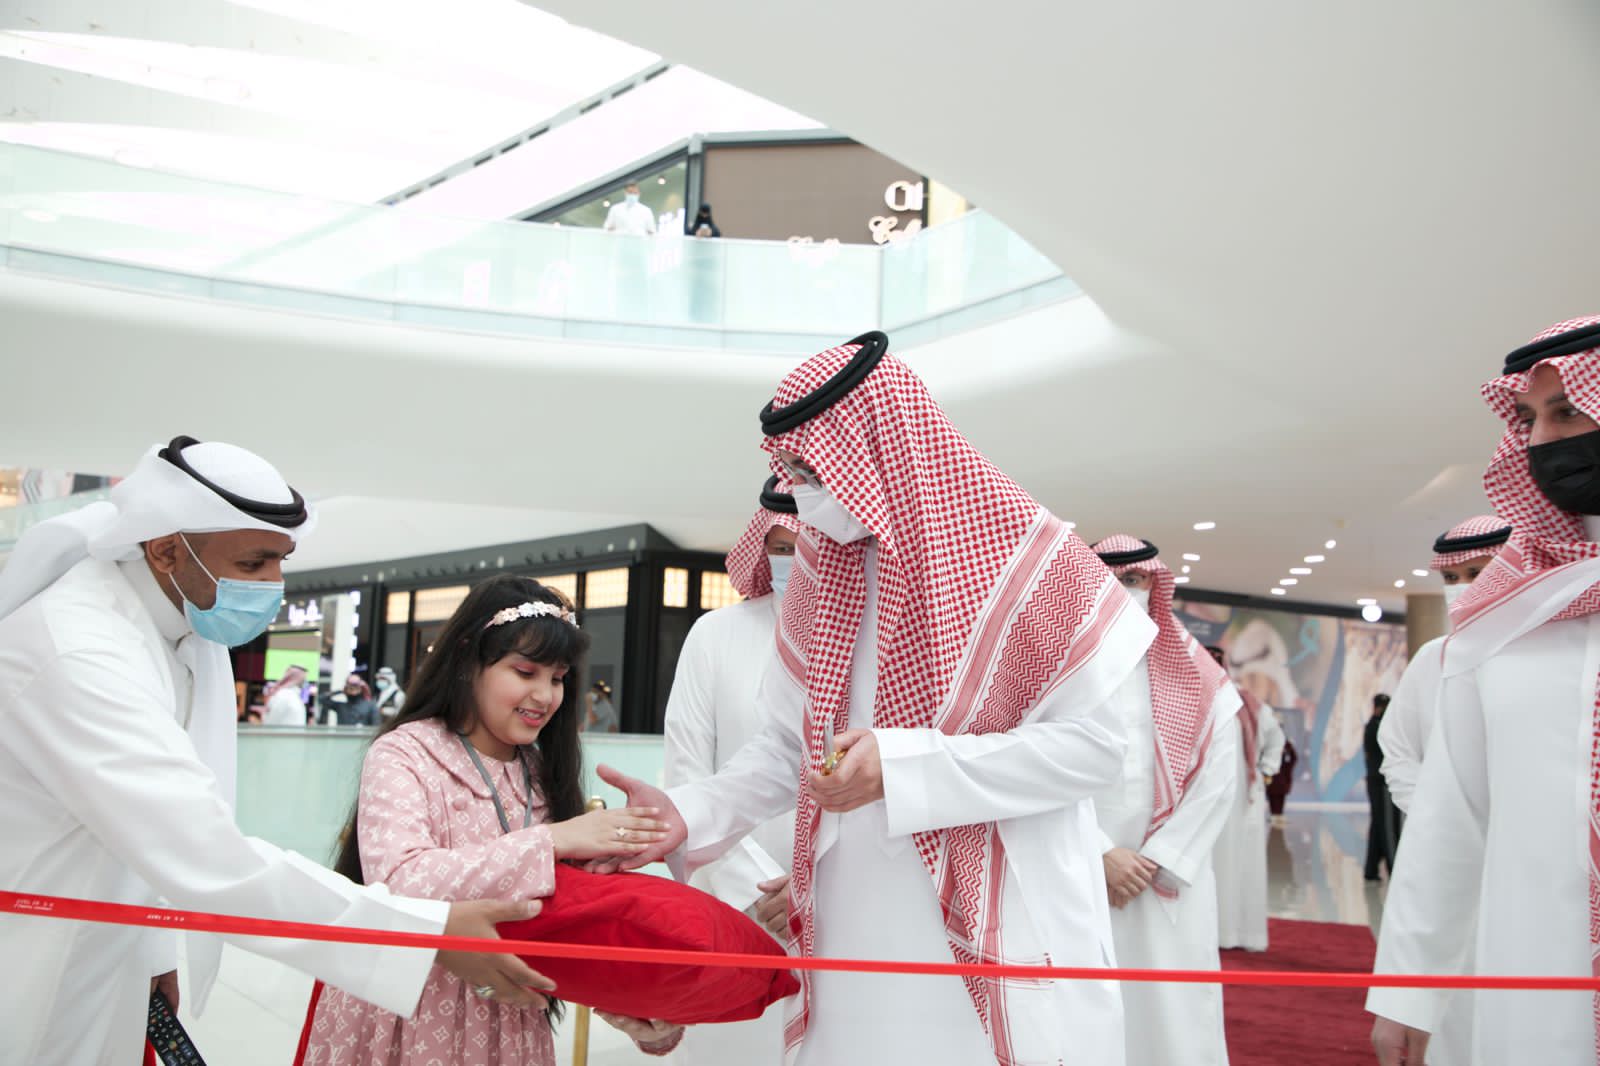 الأمير سعود بن جلوي يفتتح معرض “ريشة طيف”